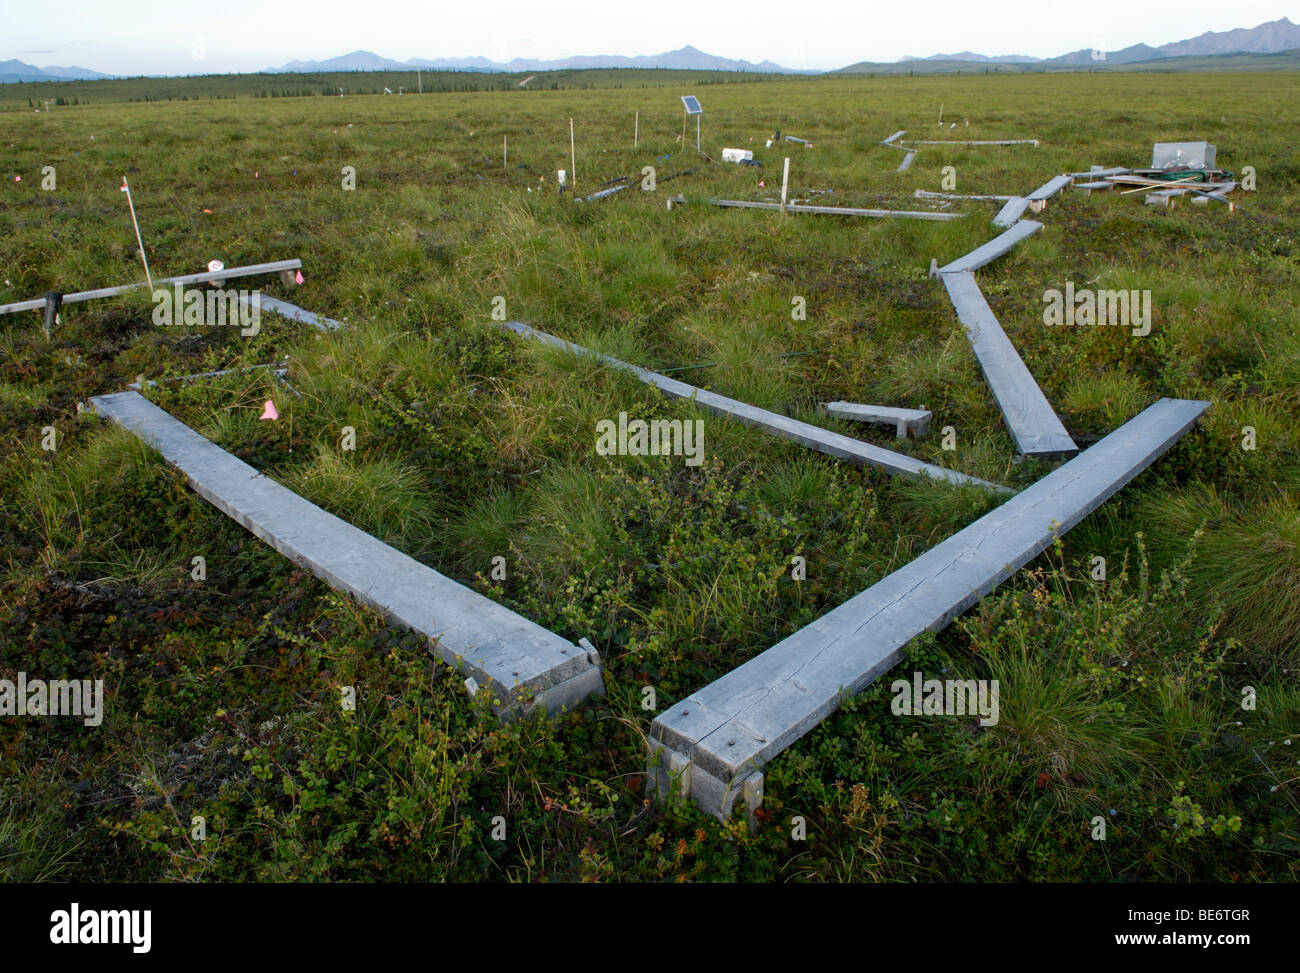 Site de recherche sur le changement climatique, de l'Alaska. La libération de dioxyde de carbone par le dégel du pergélisol est mesurée avec la croissance de la toundra. Banque D'Images